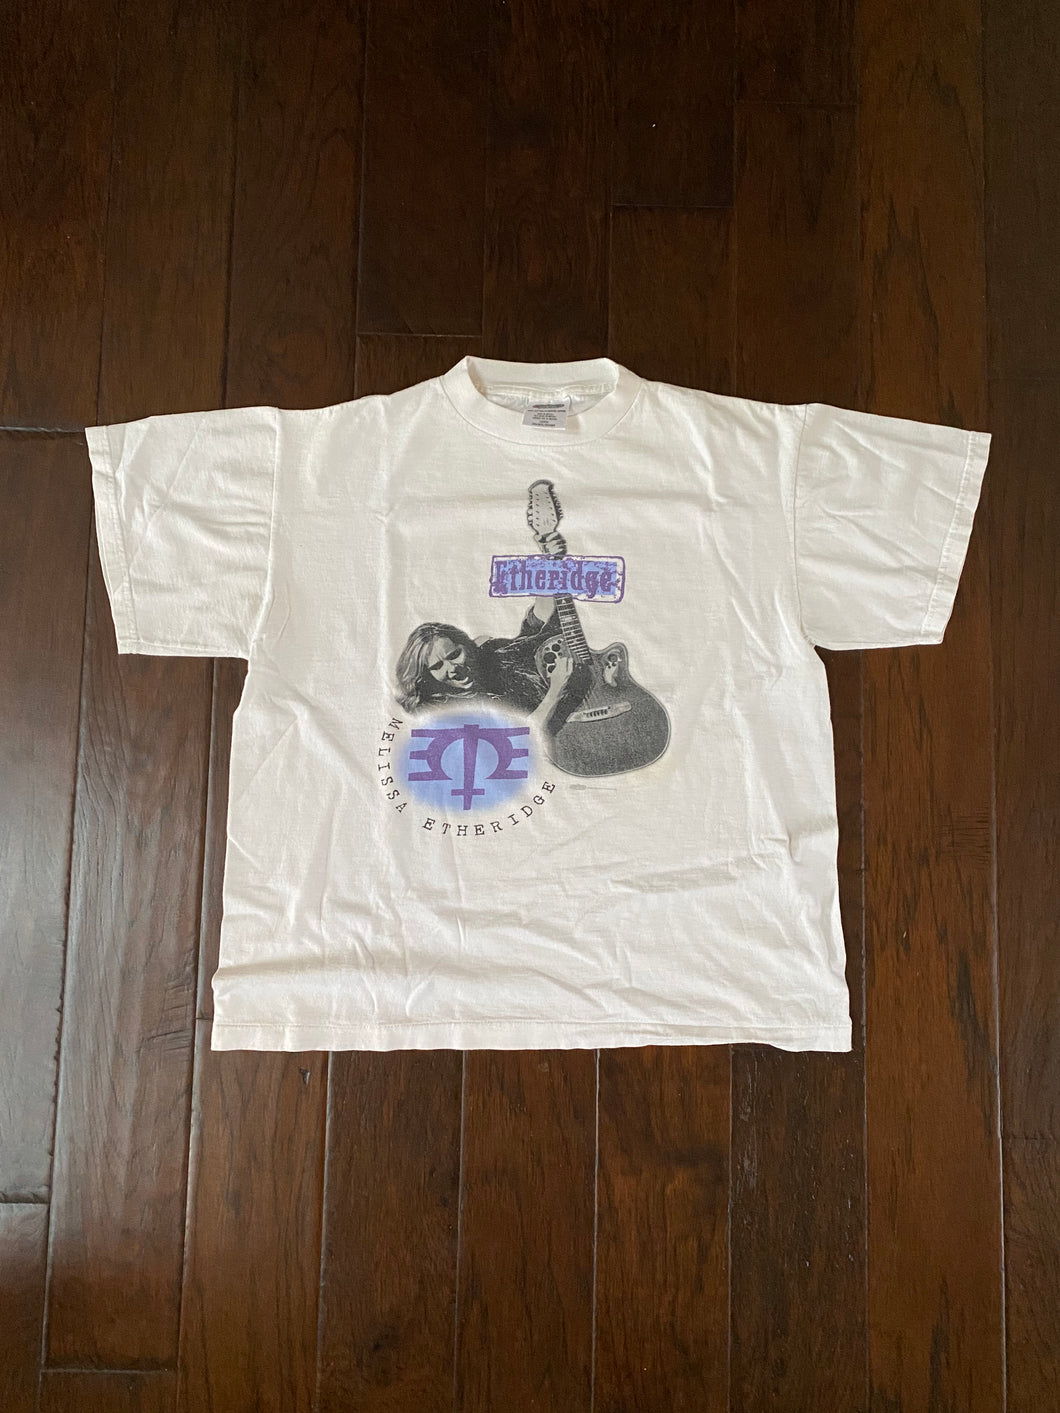 Melissa Etheridge 1995 Vintage Distressed T-shirt